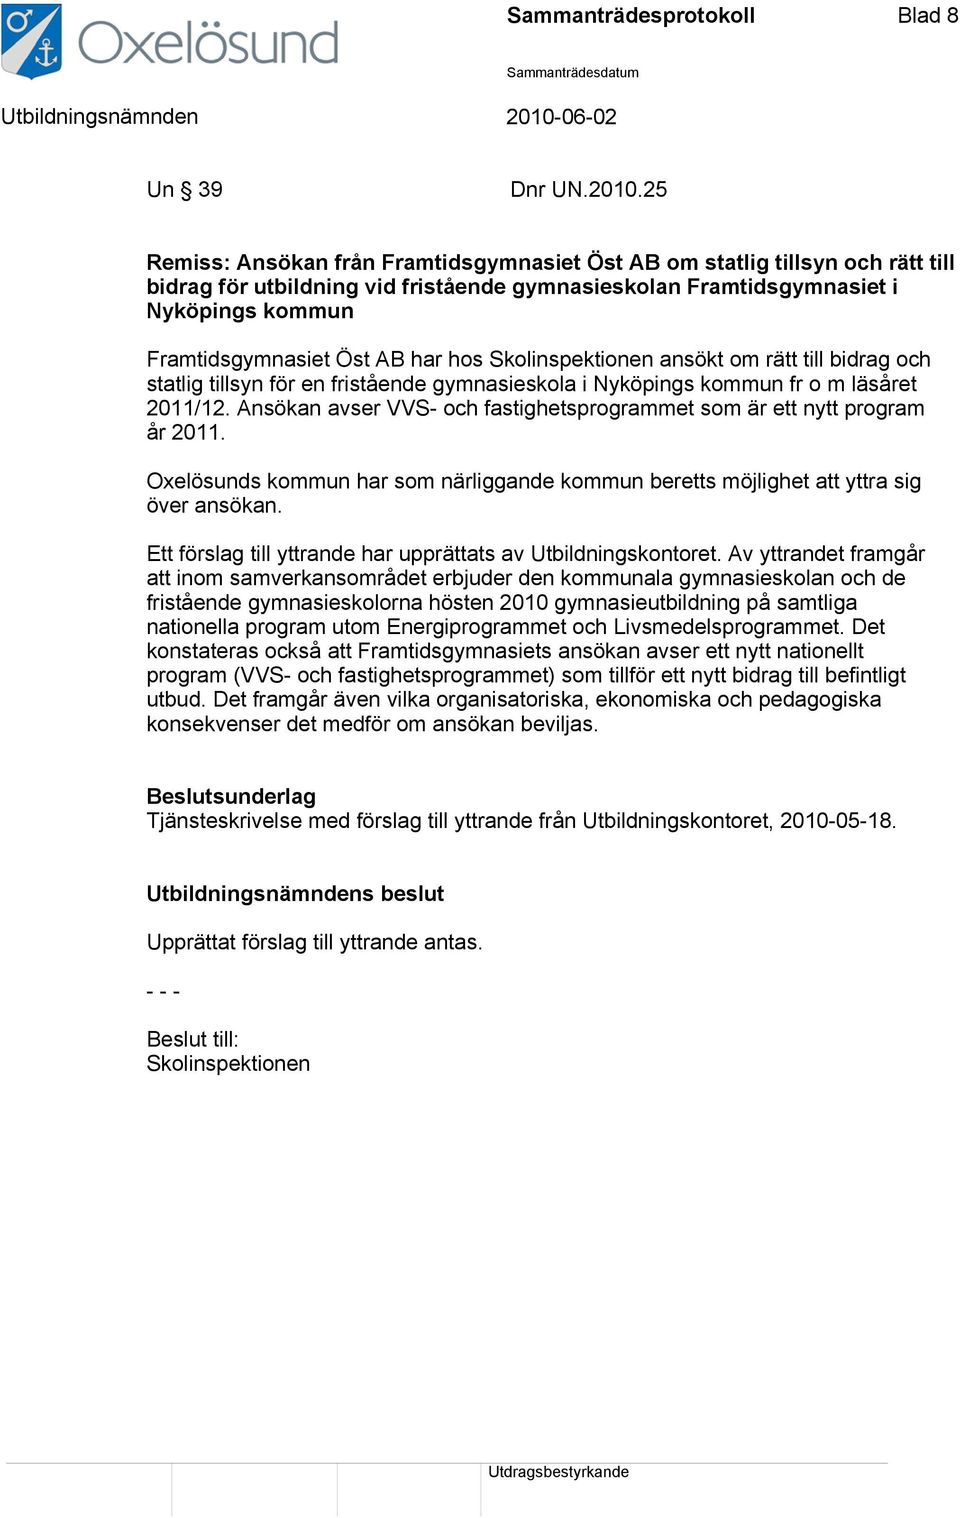 hos Skolinspektionen ansökt om rätt till bidrag och statlig tillsyn för en fristående gymnasieskola i Nyköpings kommun fr o m läsåret 2011/12.